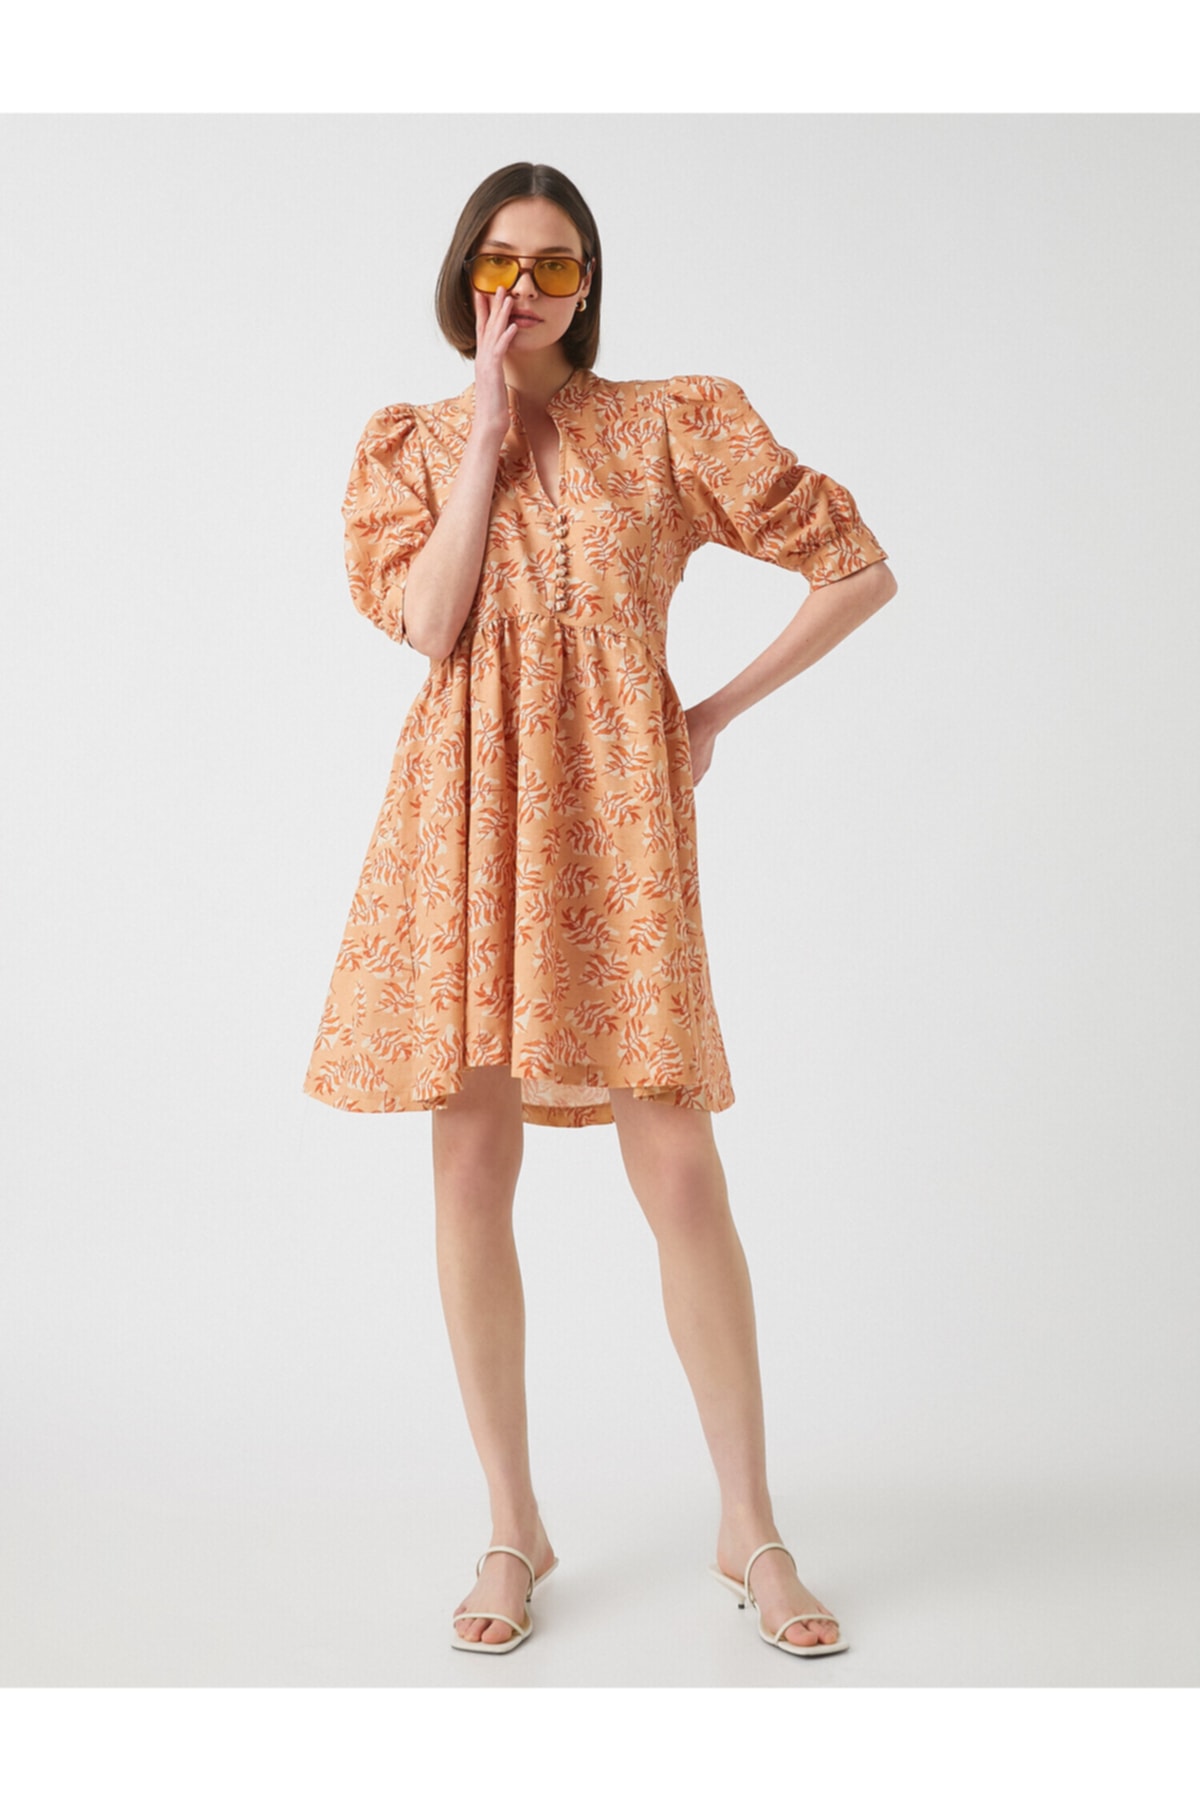 Koton Kleid Orange A-Linie Fast ausverkauft